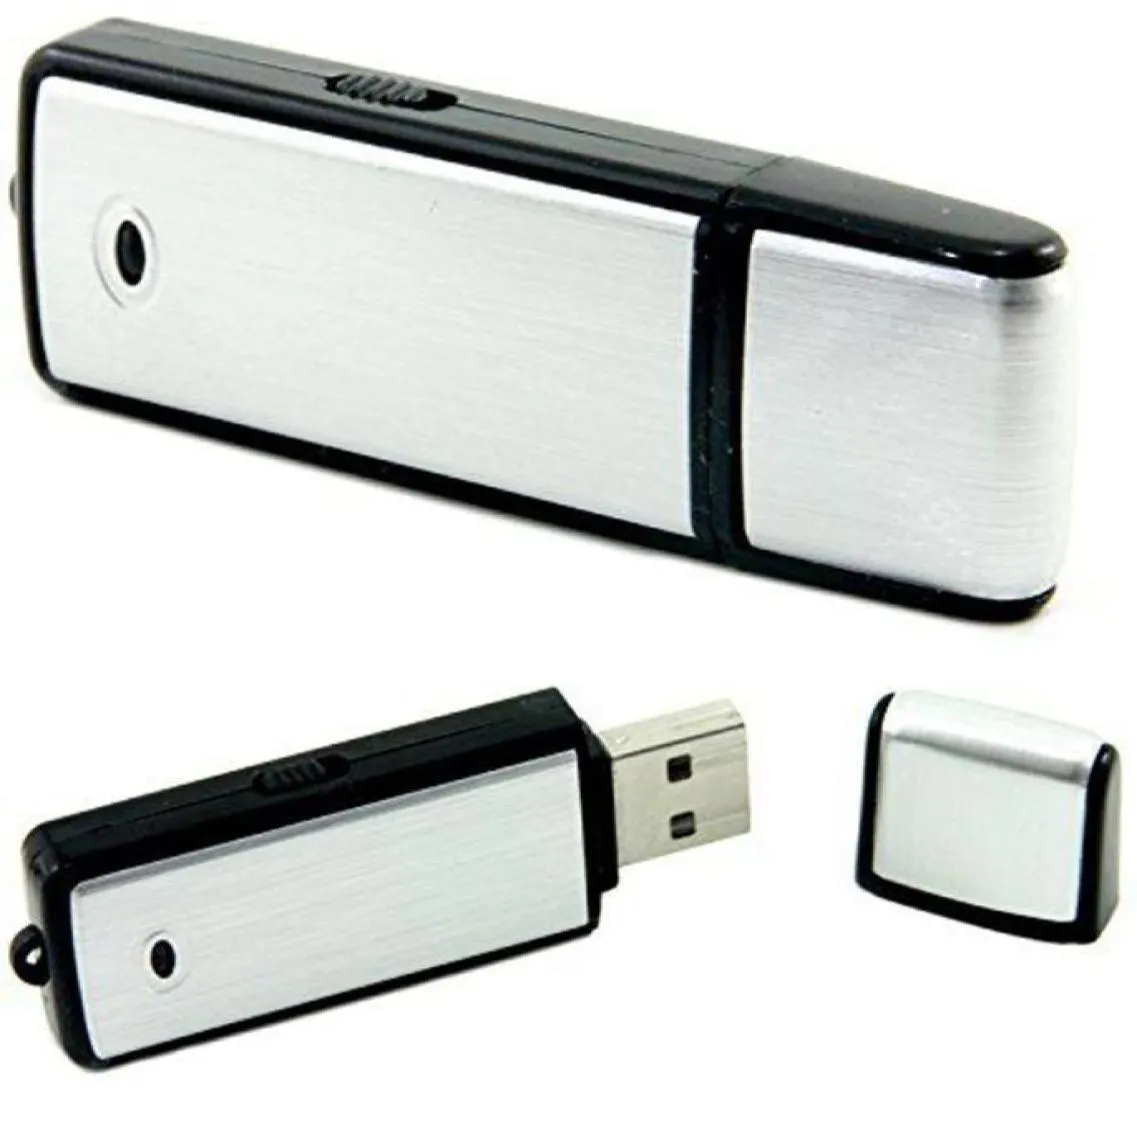 USB Sound Recorder - 8 GB Voice Recording Device - Digital O Recorder - Inget blinkande ljus vid inspelning av PQ1417023277